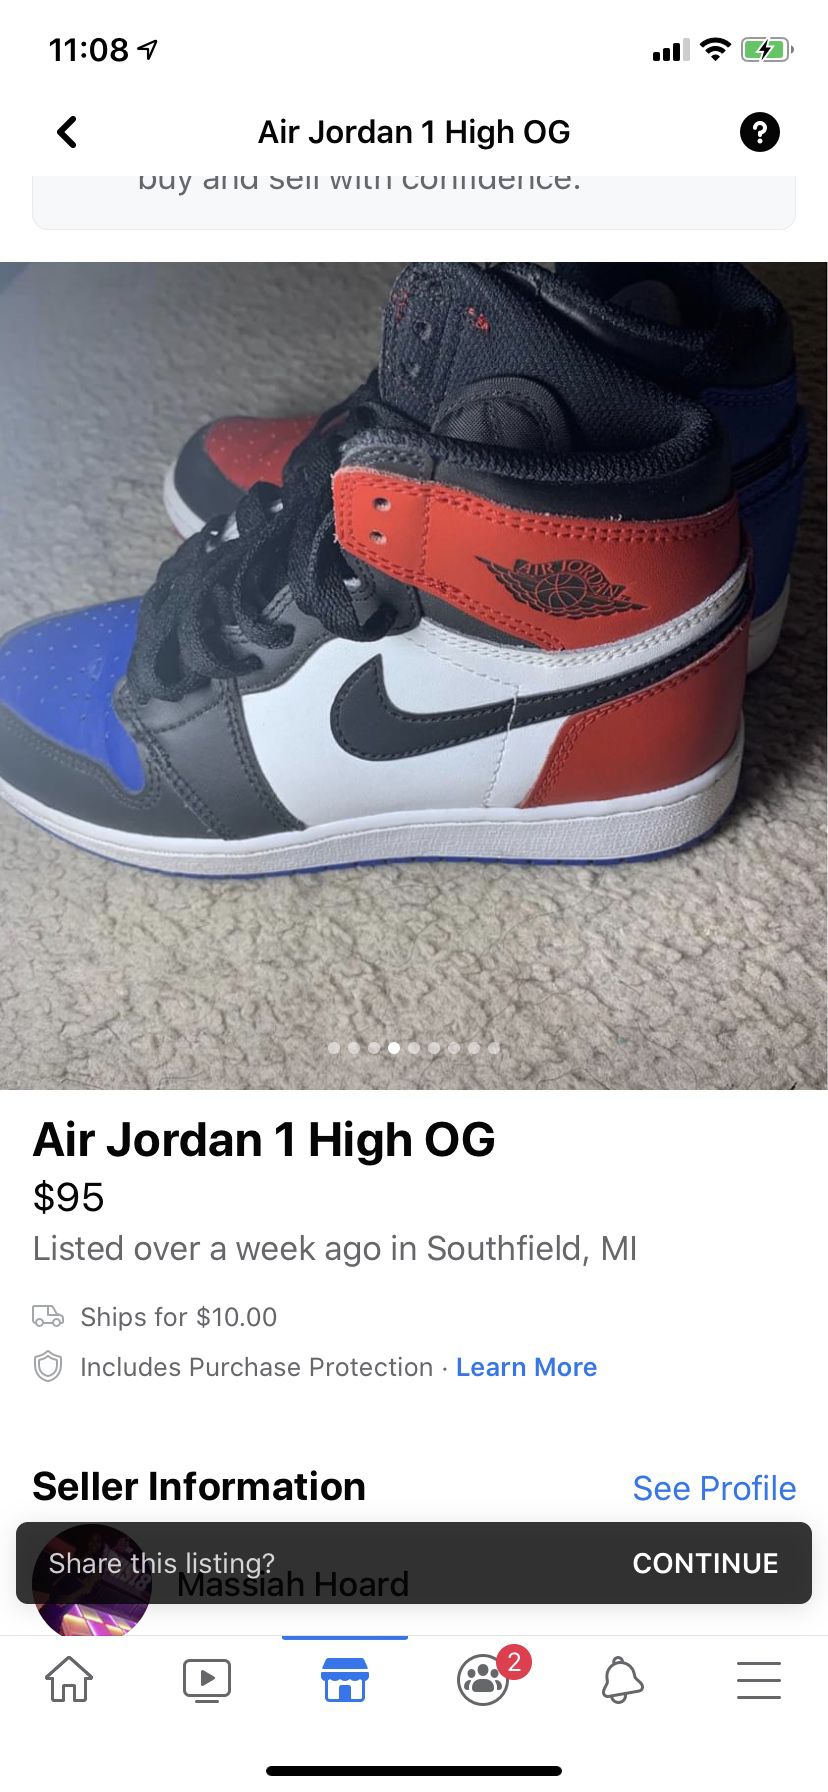 Air Jordan 1 high OG